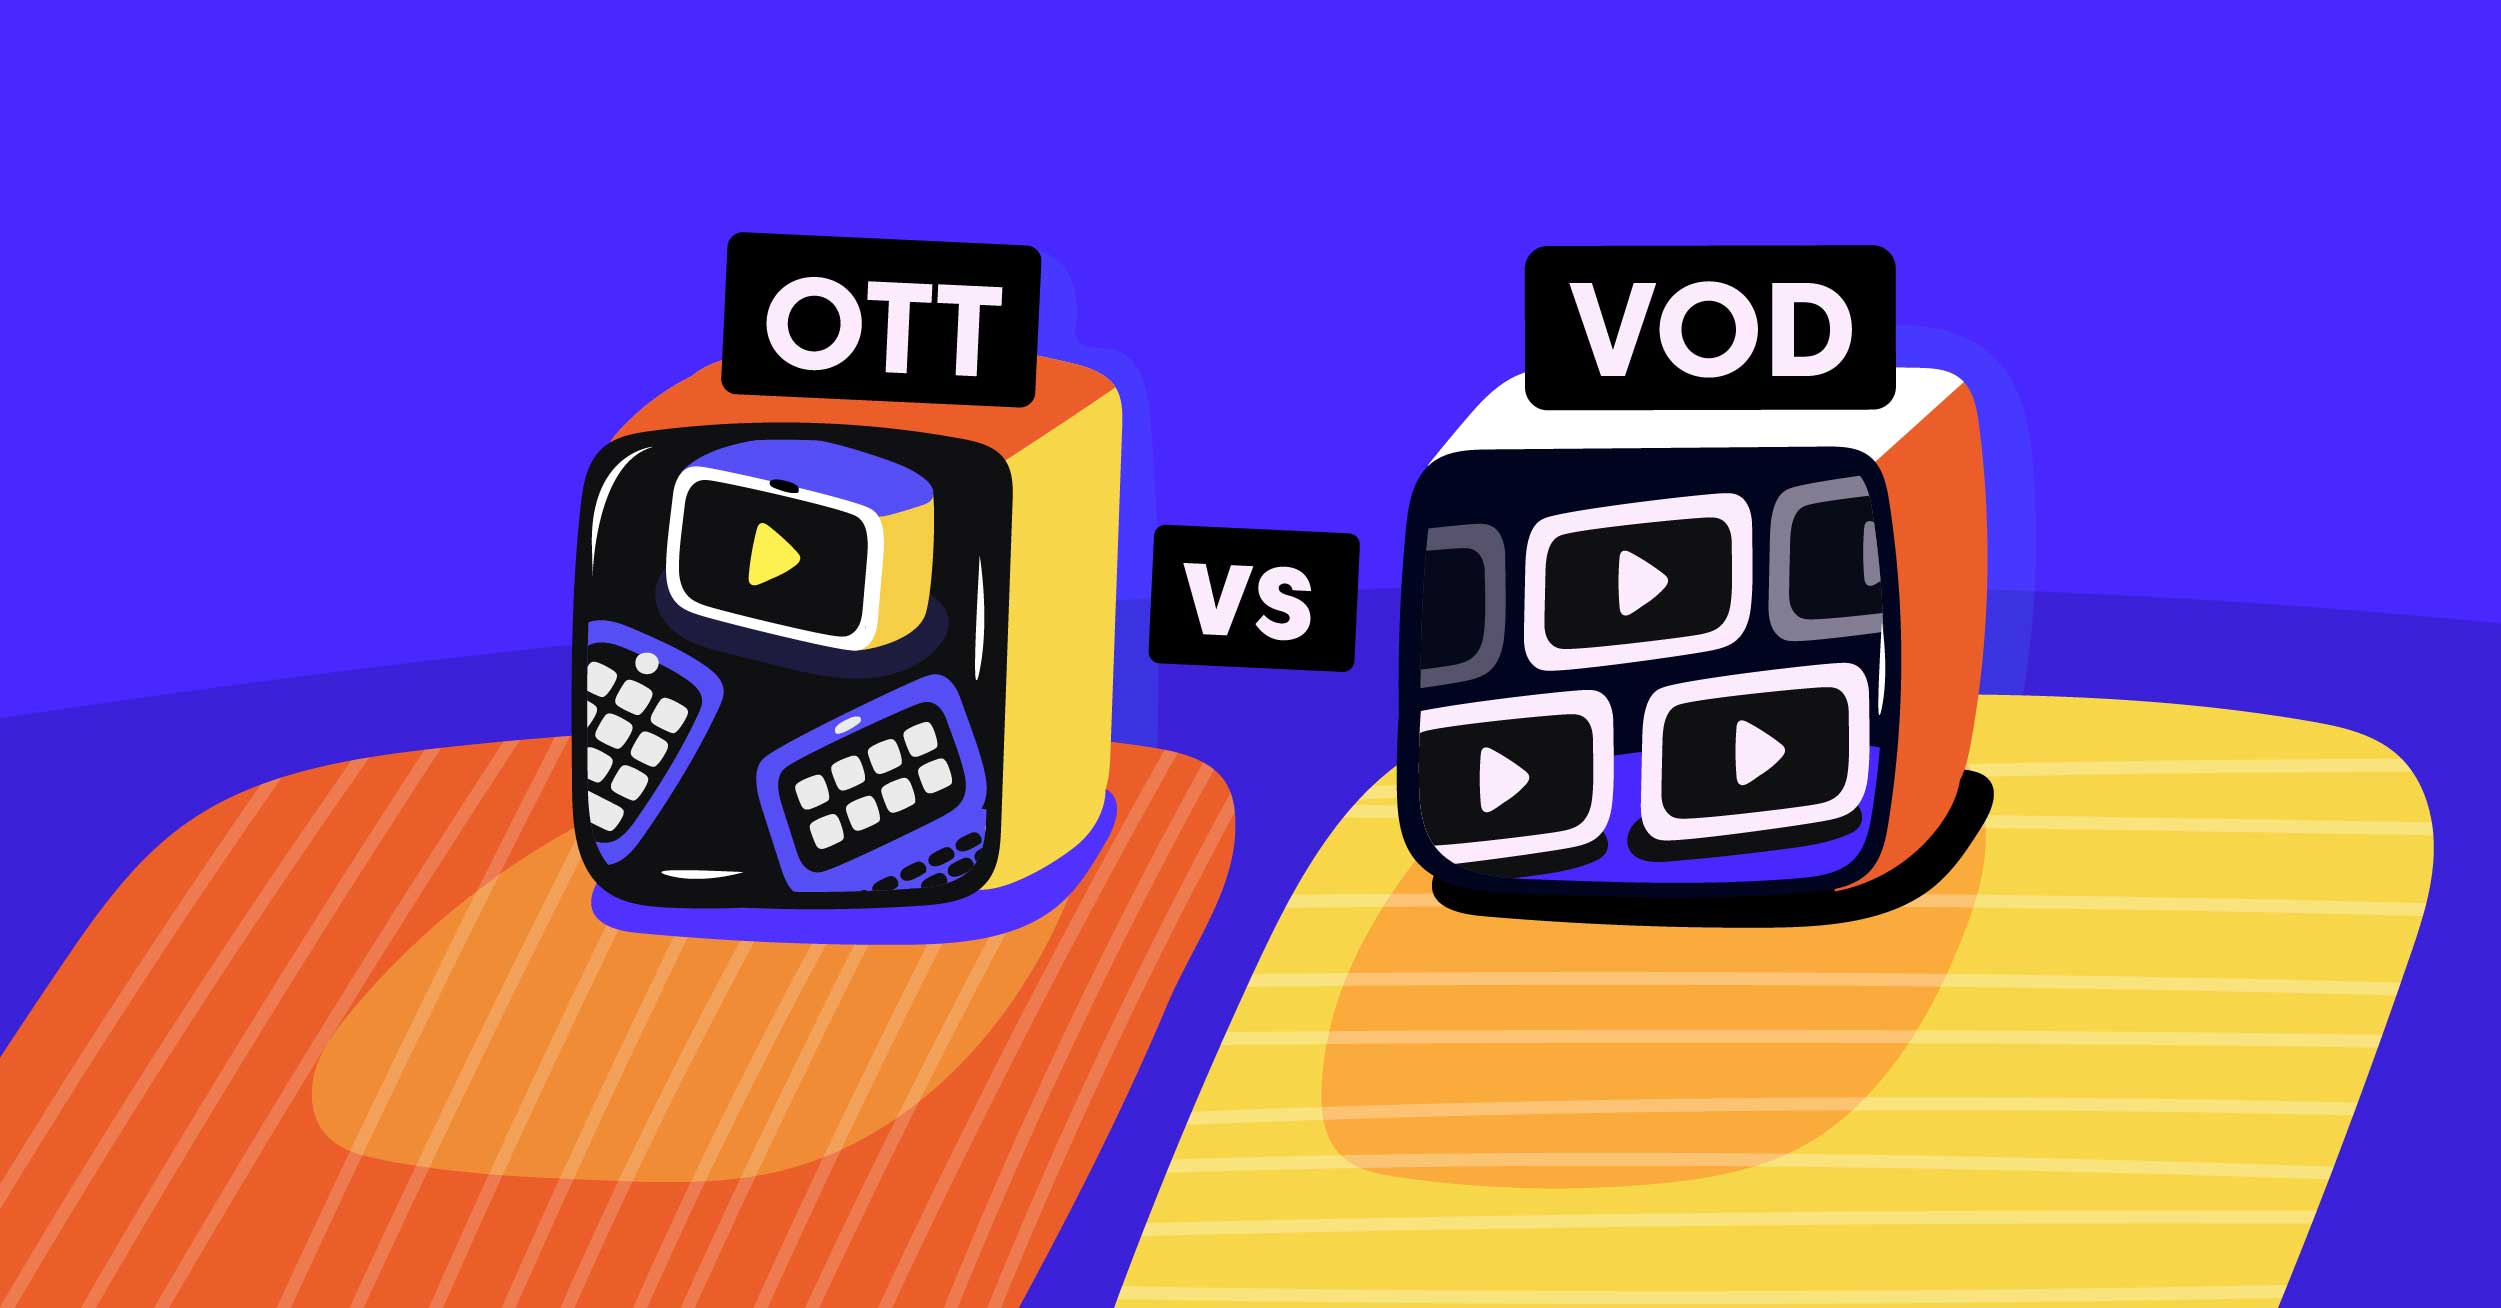 تفاوت بین OTT و VOD چیست؟